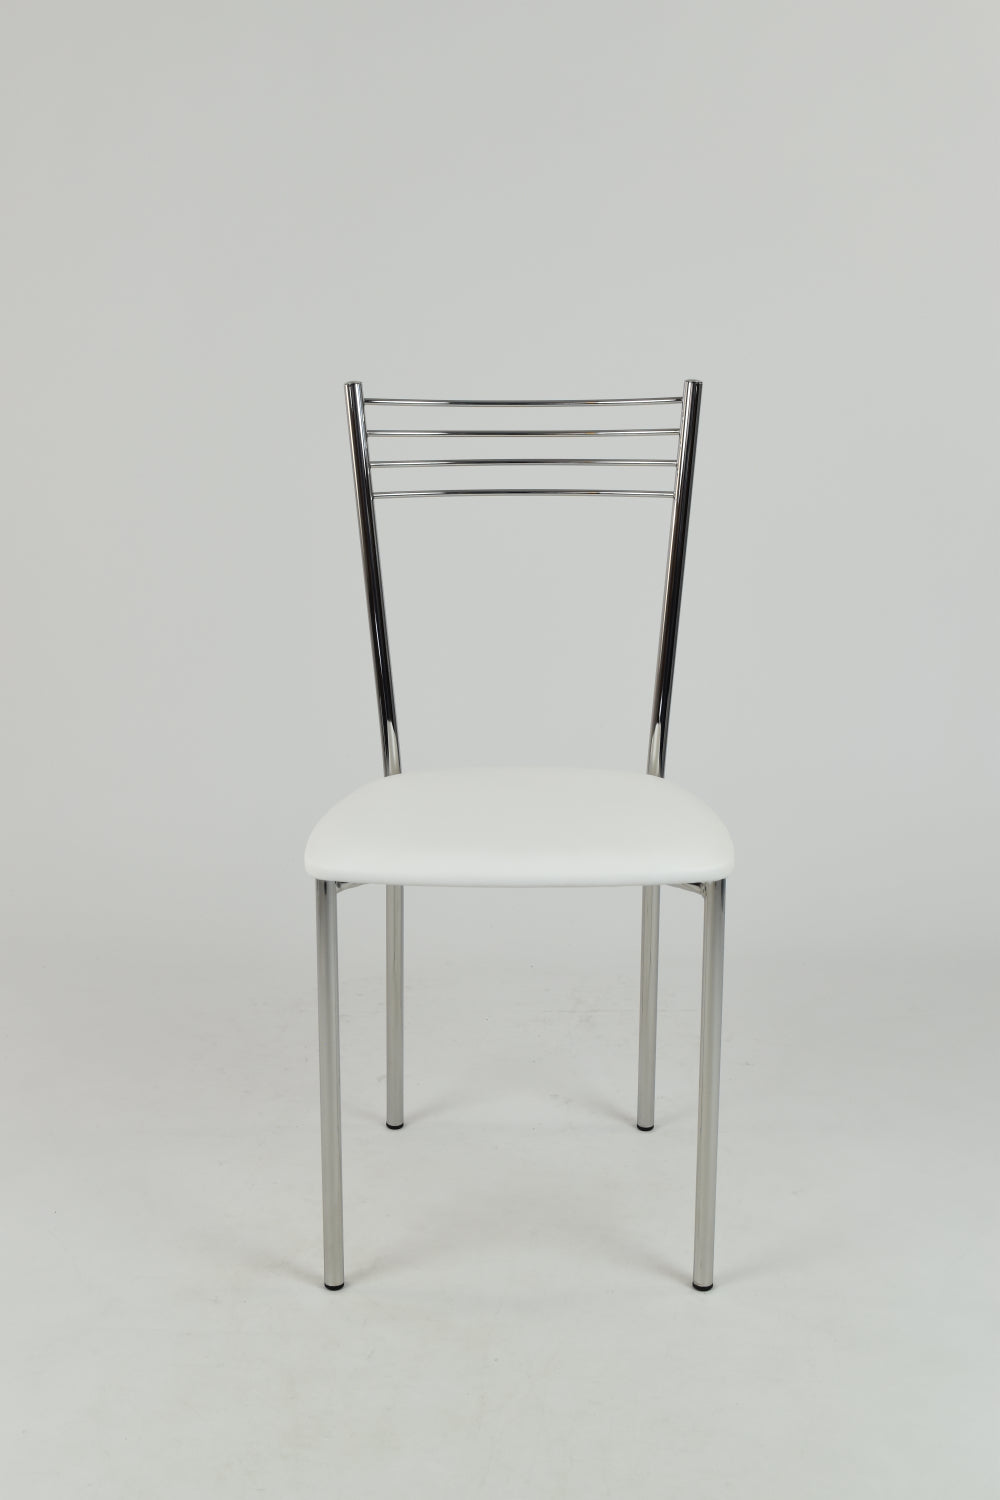 Tommychairs - Set 4 sedie modello Elena per cucina bar e sala da pranzo,  struttura in acciaio cromato e seduta in legno massello color rovere